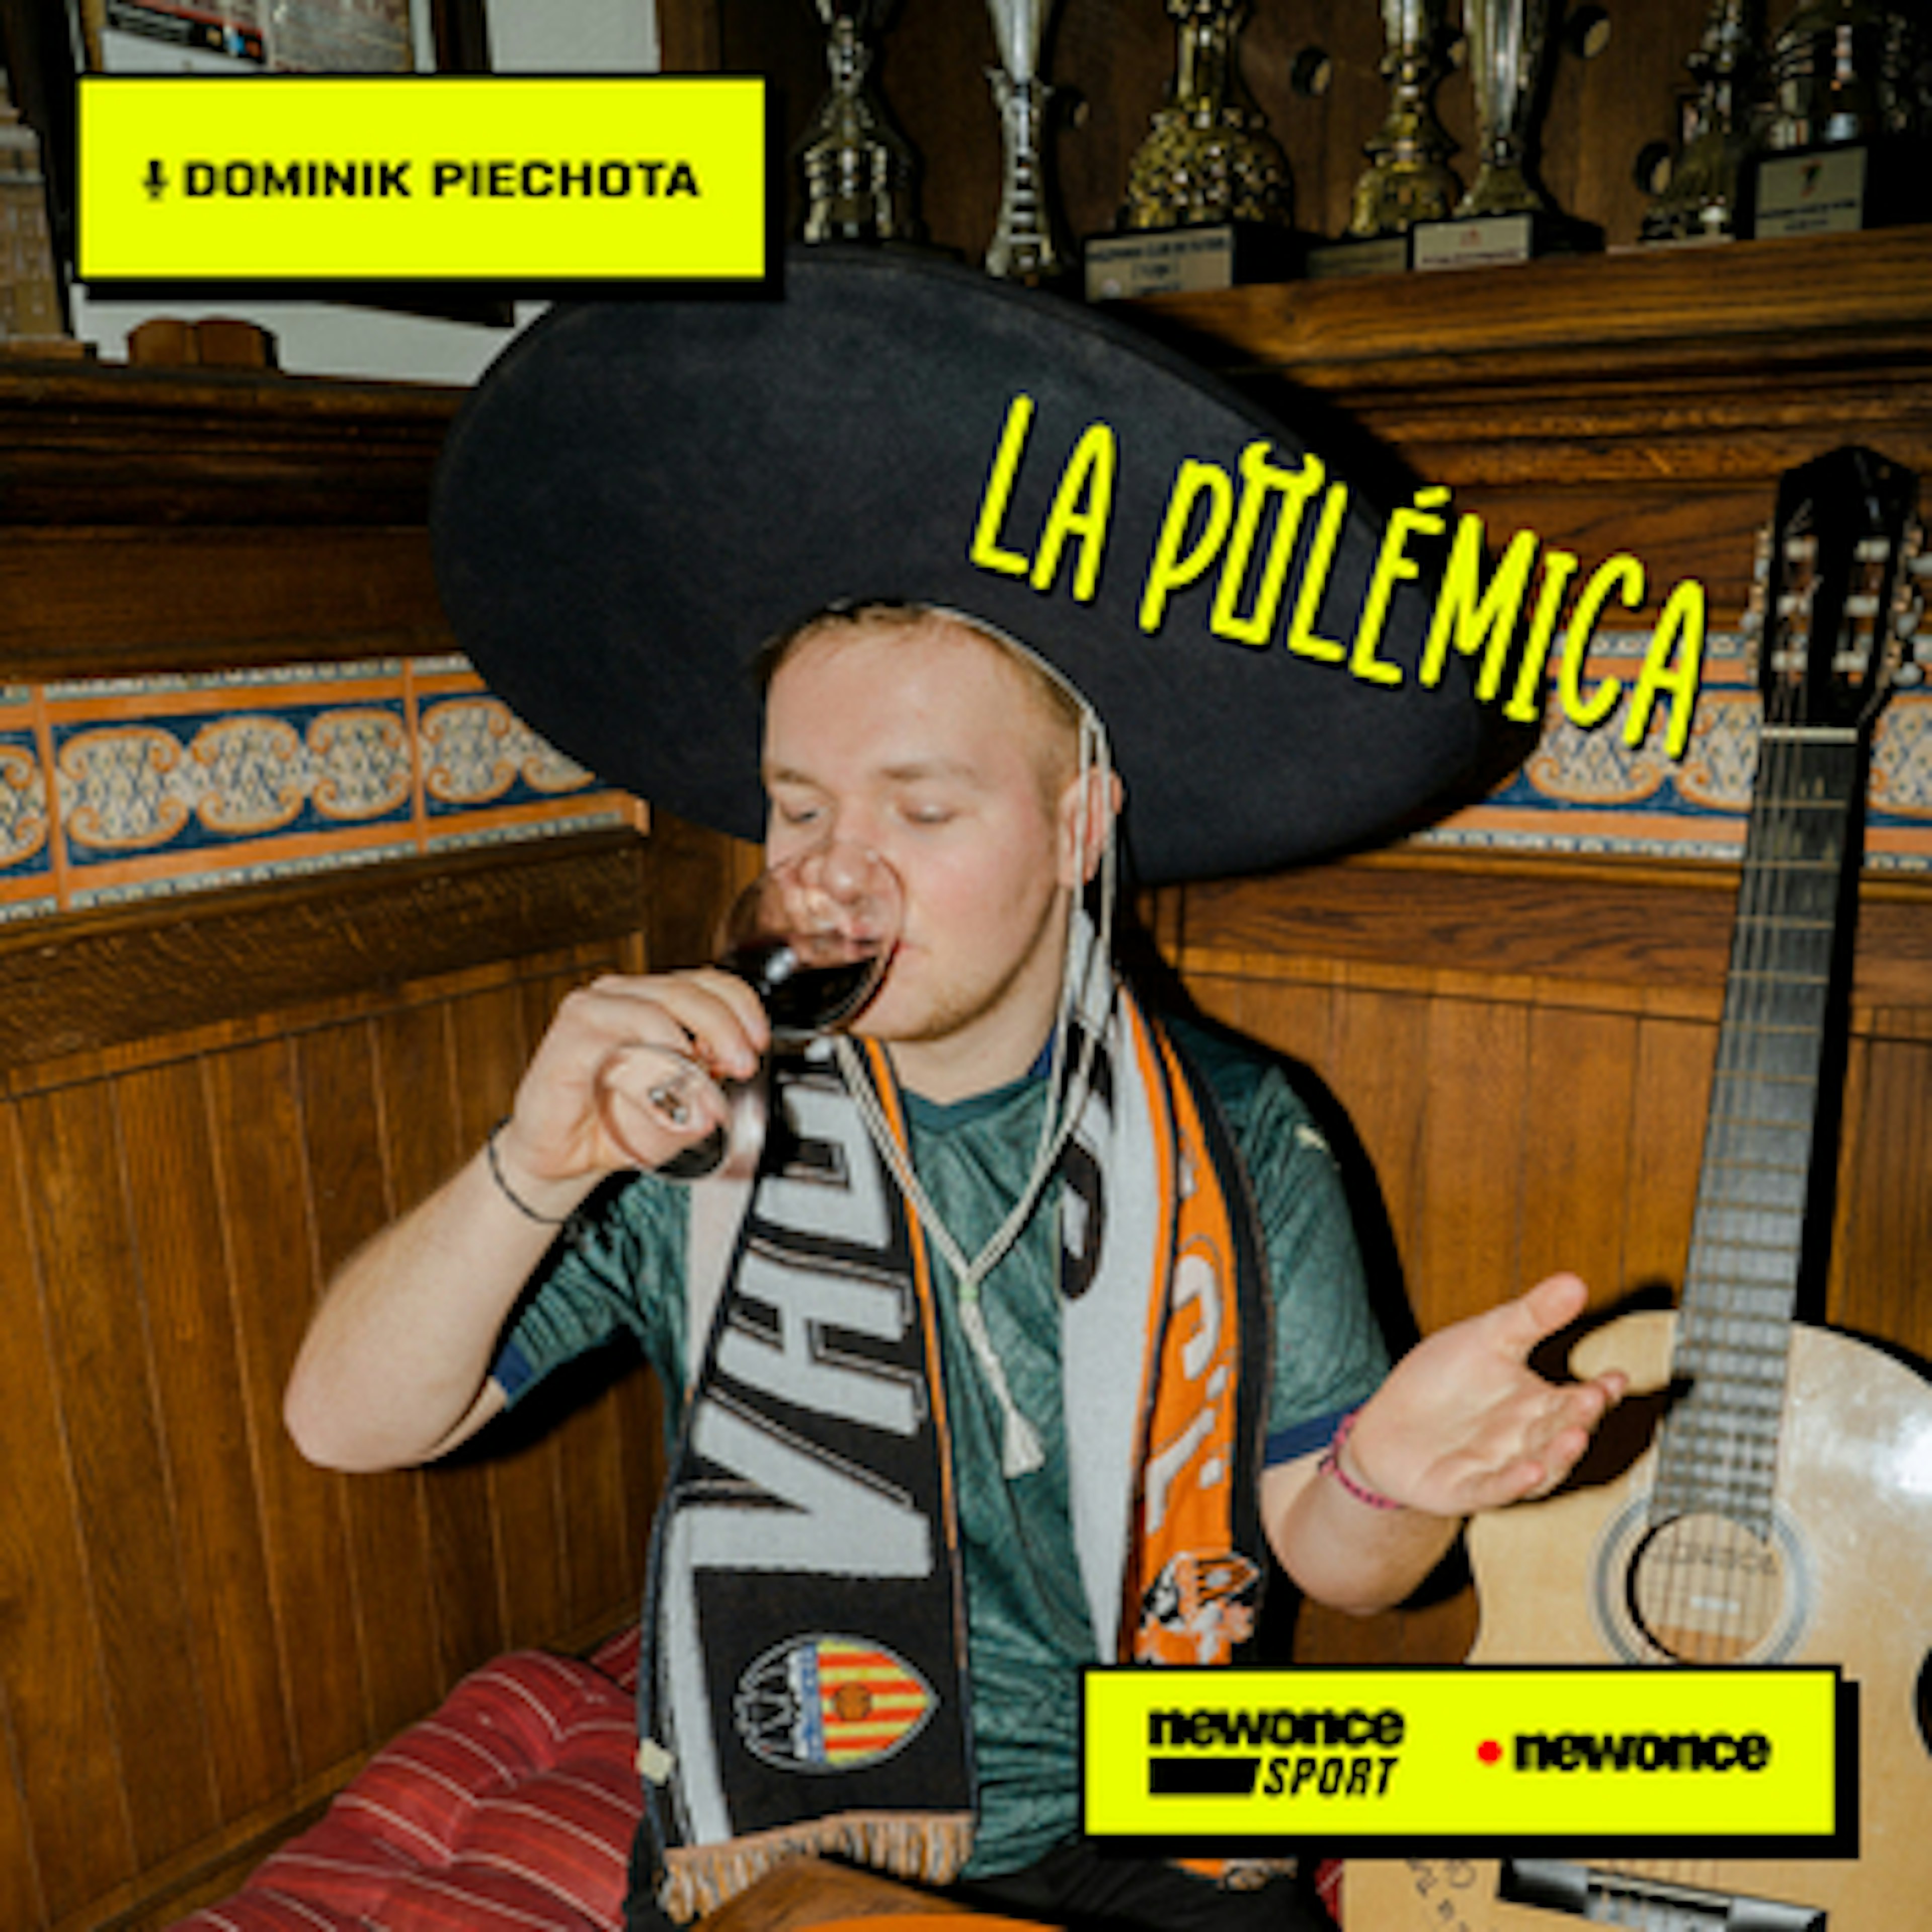 La Polemica - Xaviball, czyli jak zaczyna grać nowa Barcelona